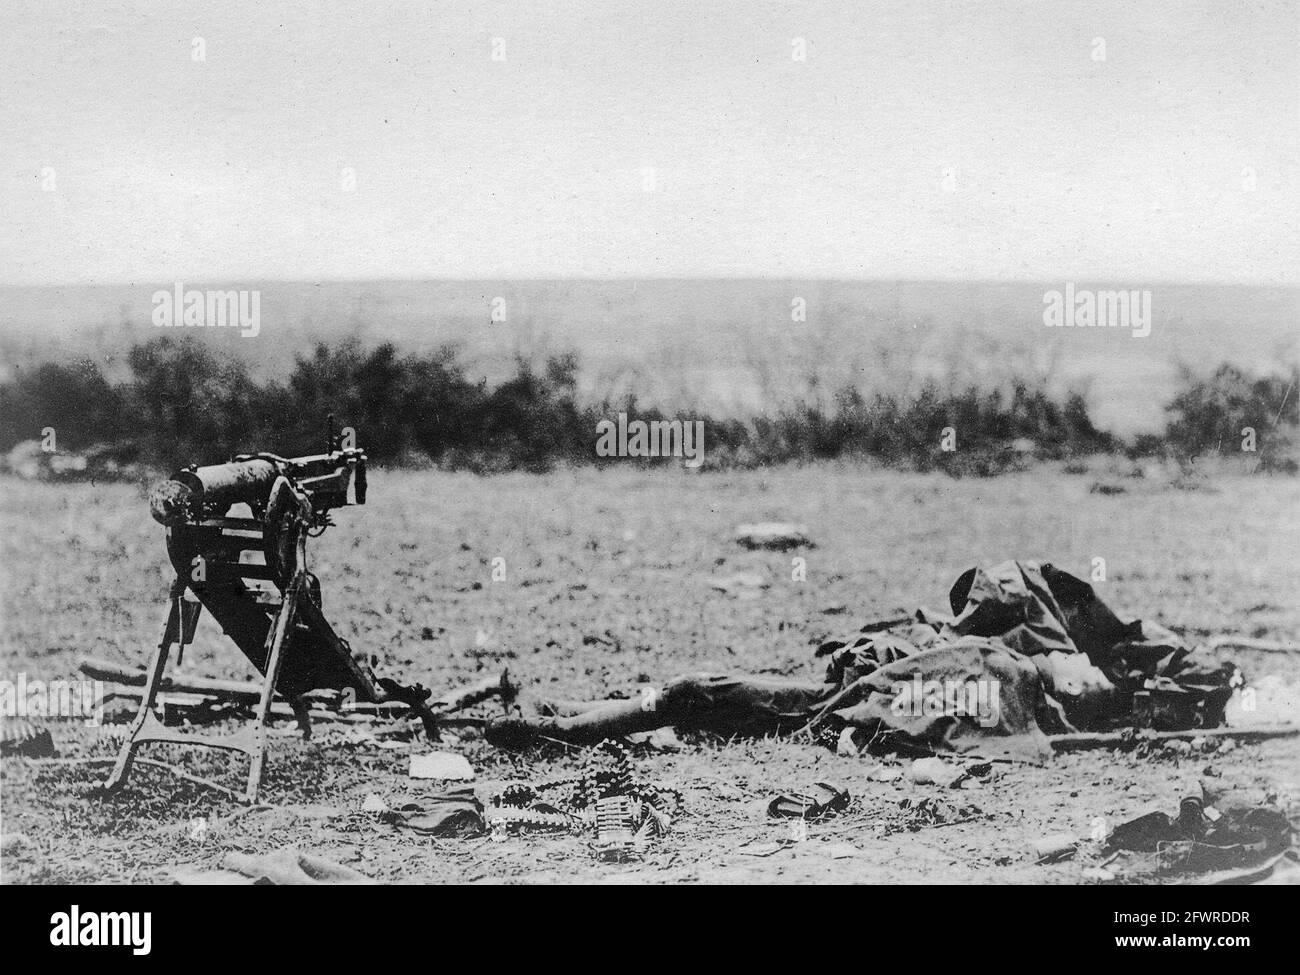 Un soldat allemand qui a été tué à bord de sa mitrailleuse. Lors de l’offensive Meuse-Argonne, les Allemands ont largement utilisé des mitrailleuses pour entraver l’avancée des Américains. Banque D'Images